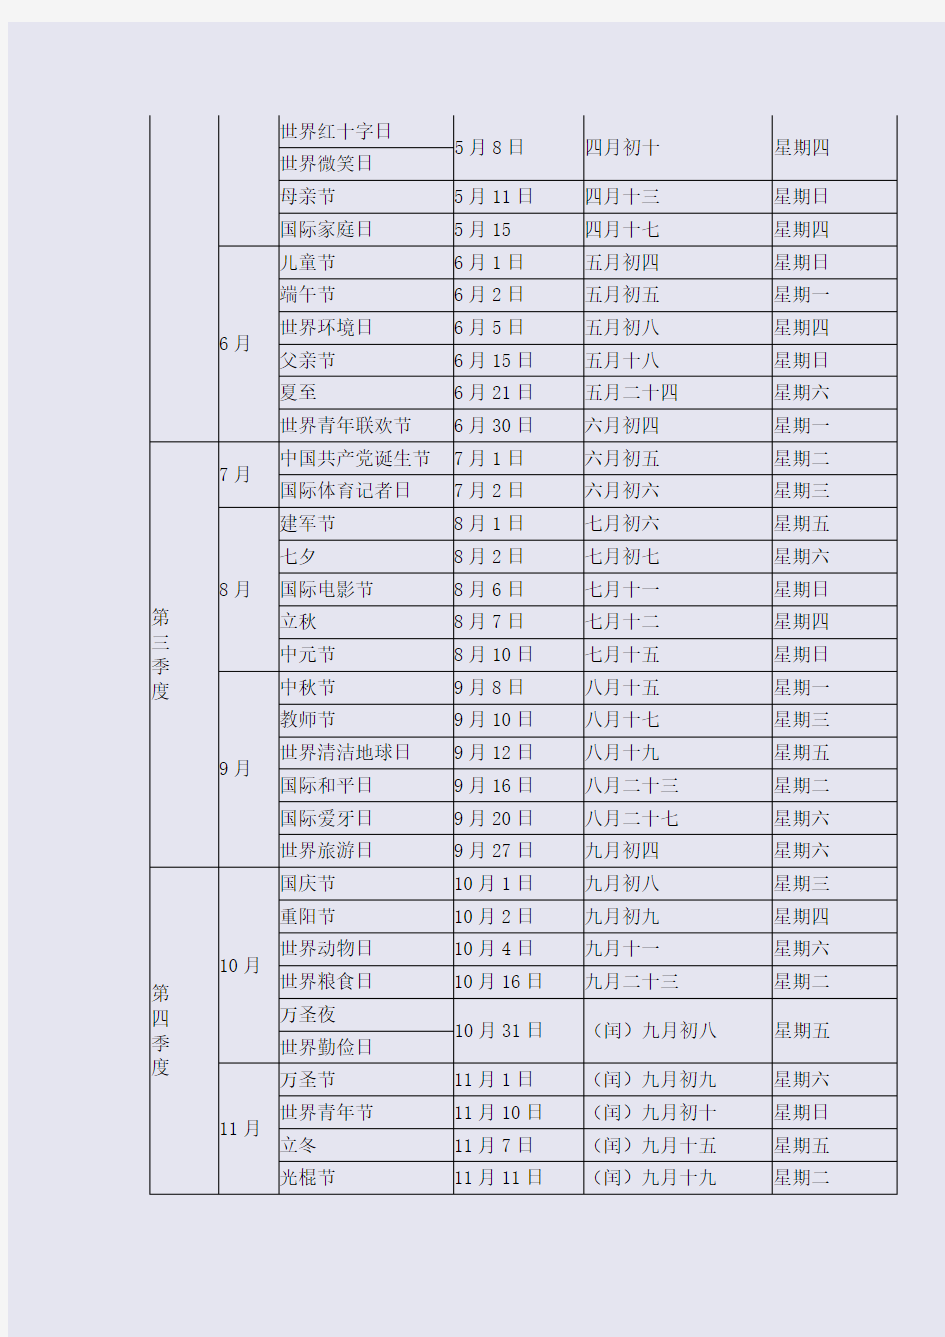 2014年各种节日时间表(中国传统节日、西方节日)